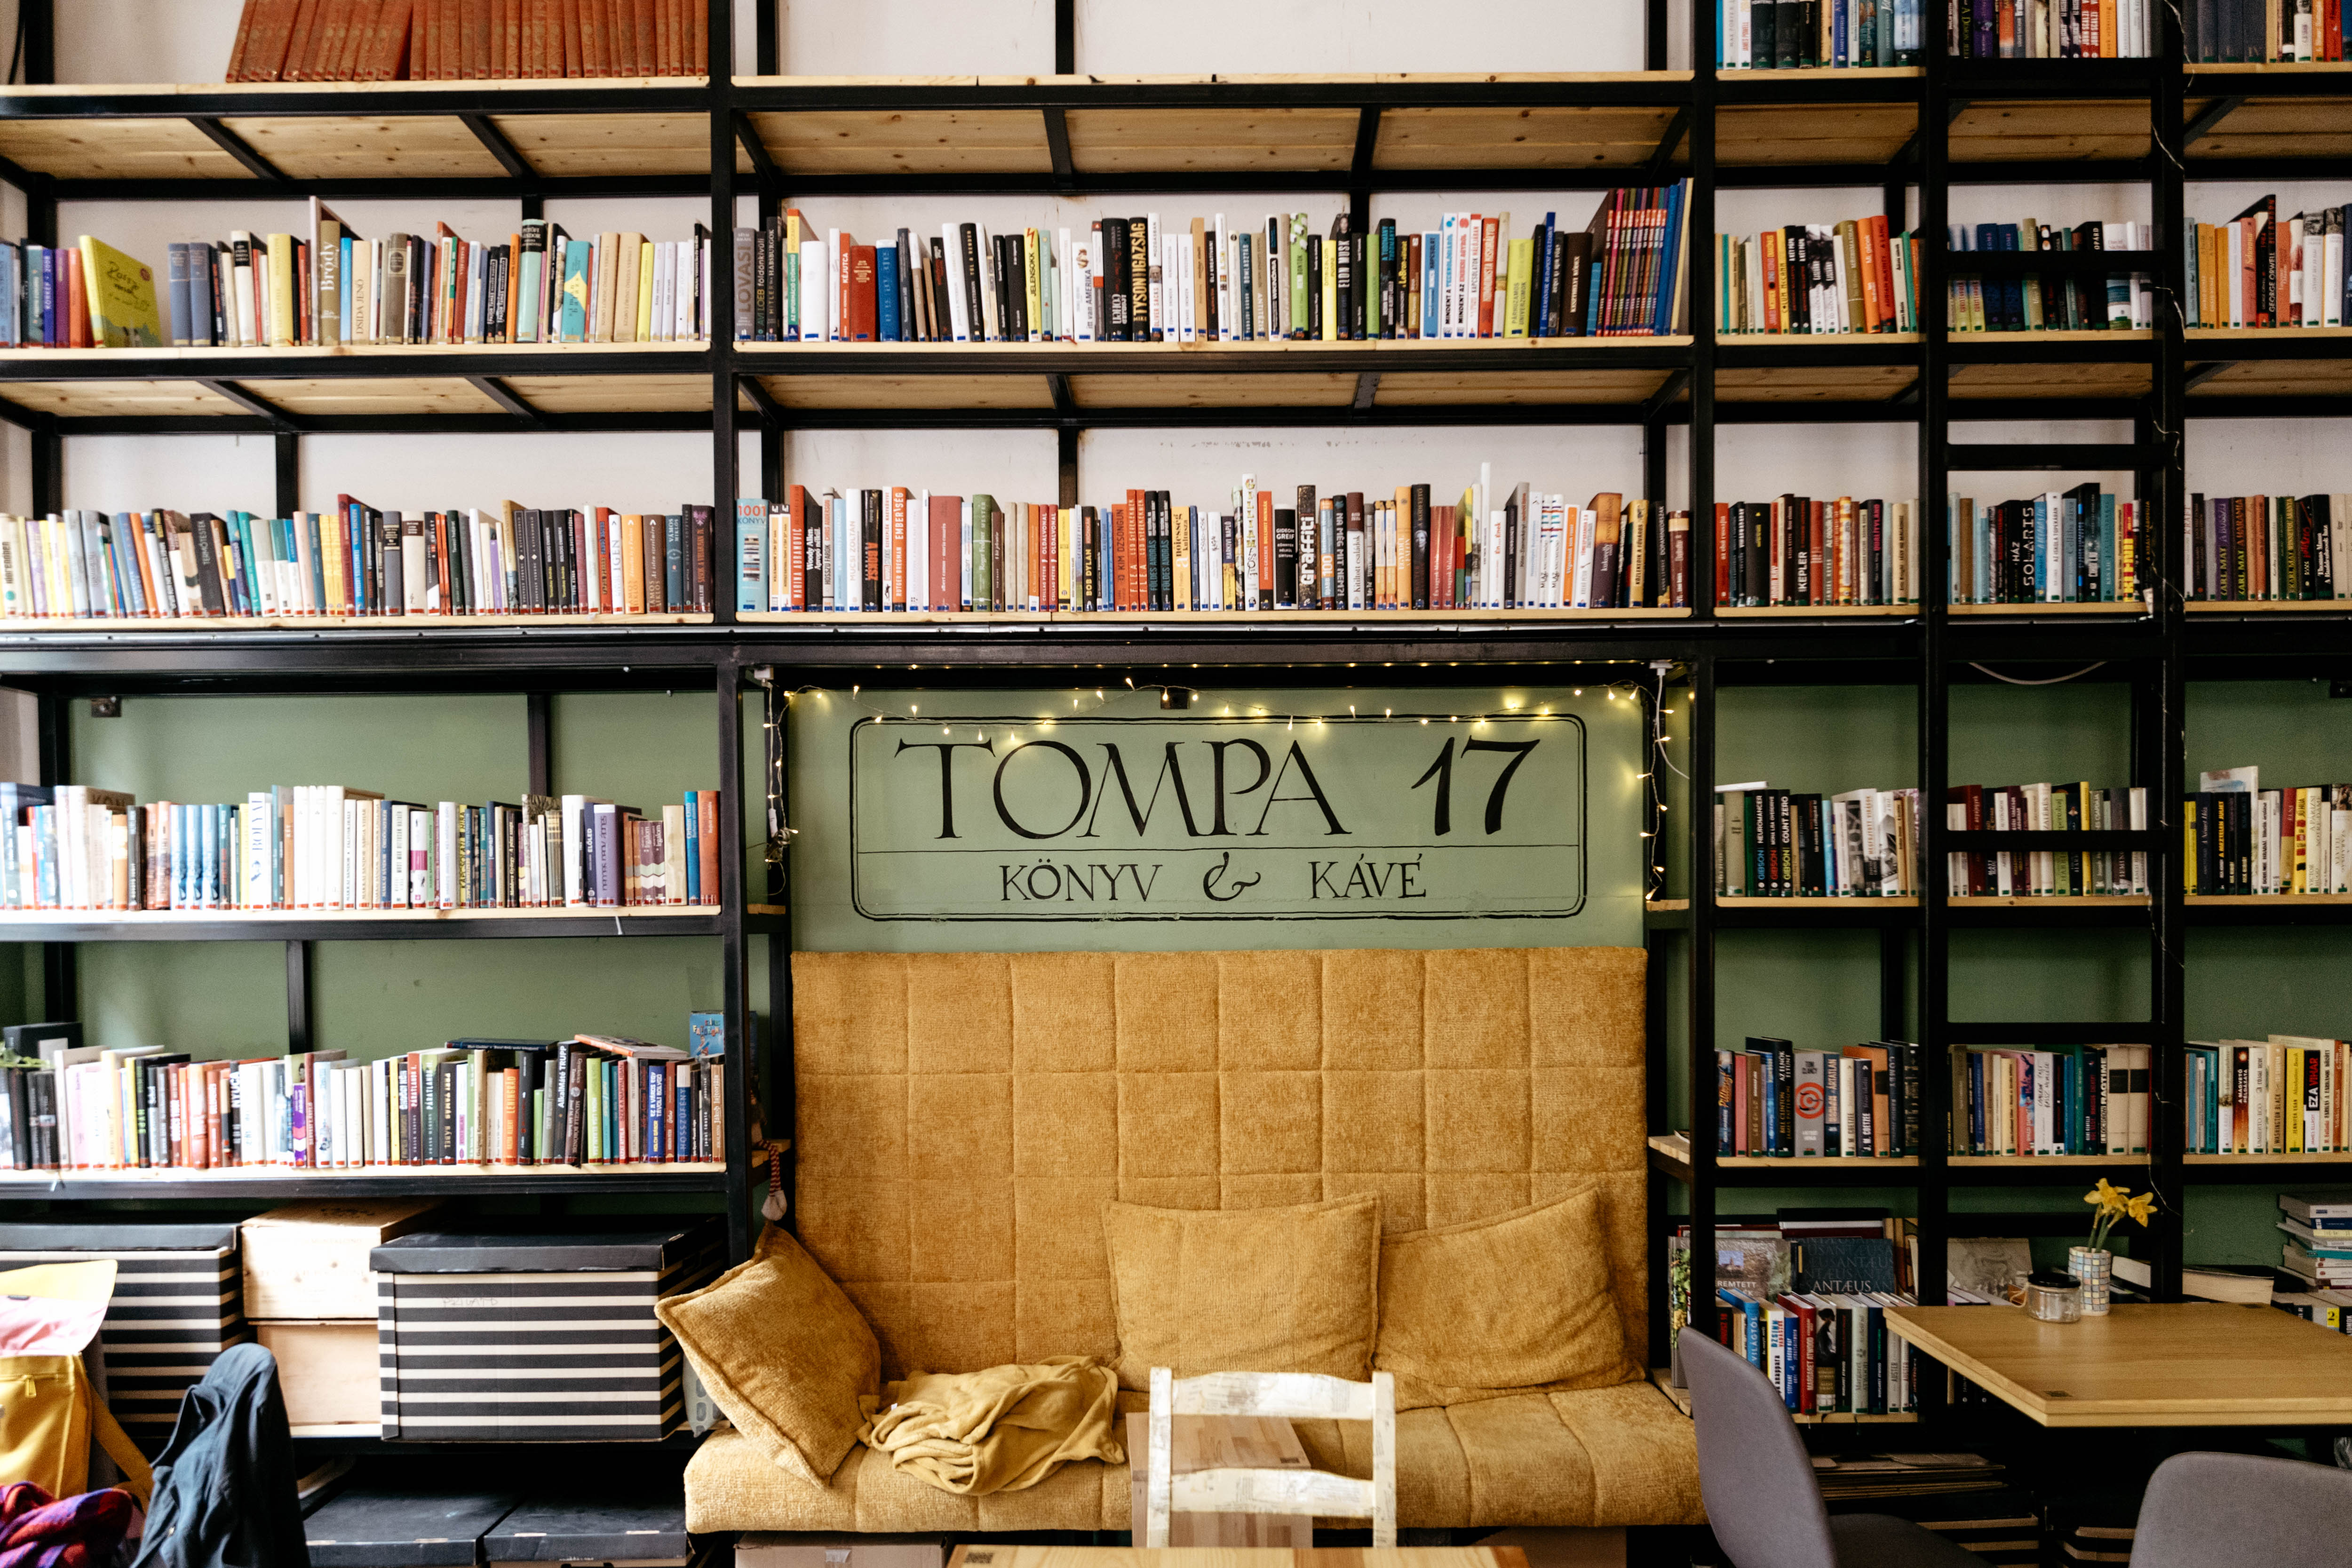 A kávézó, ami olyan, mint egy könyvekkel teli, nagy nappali – Megnéztük a Tompa17 kávézót